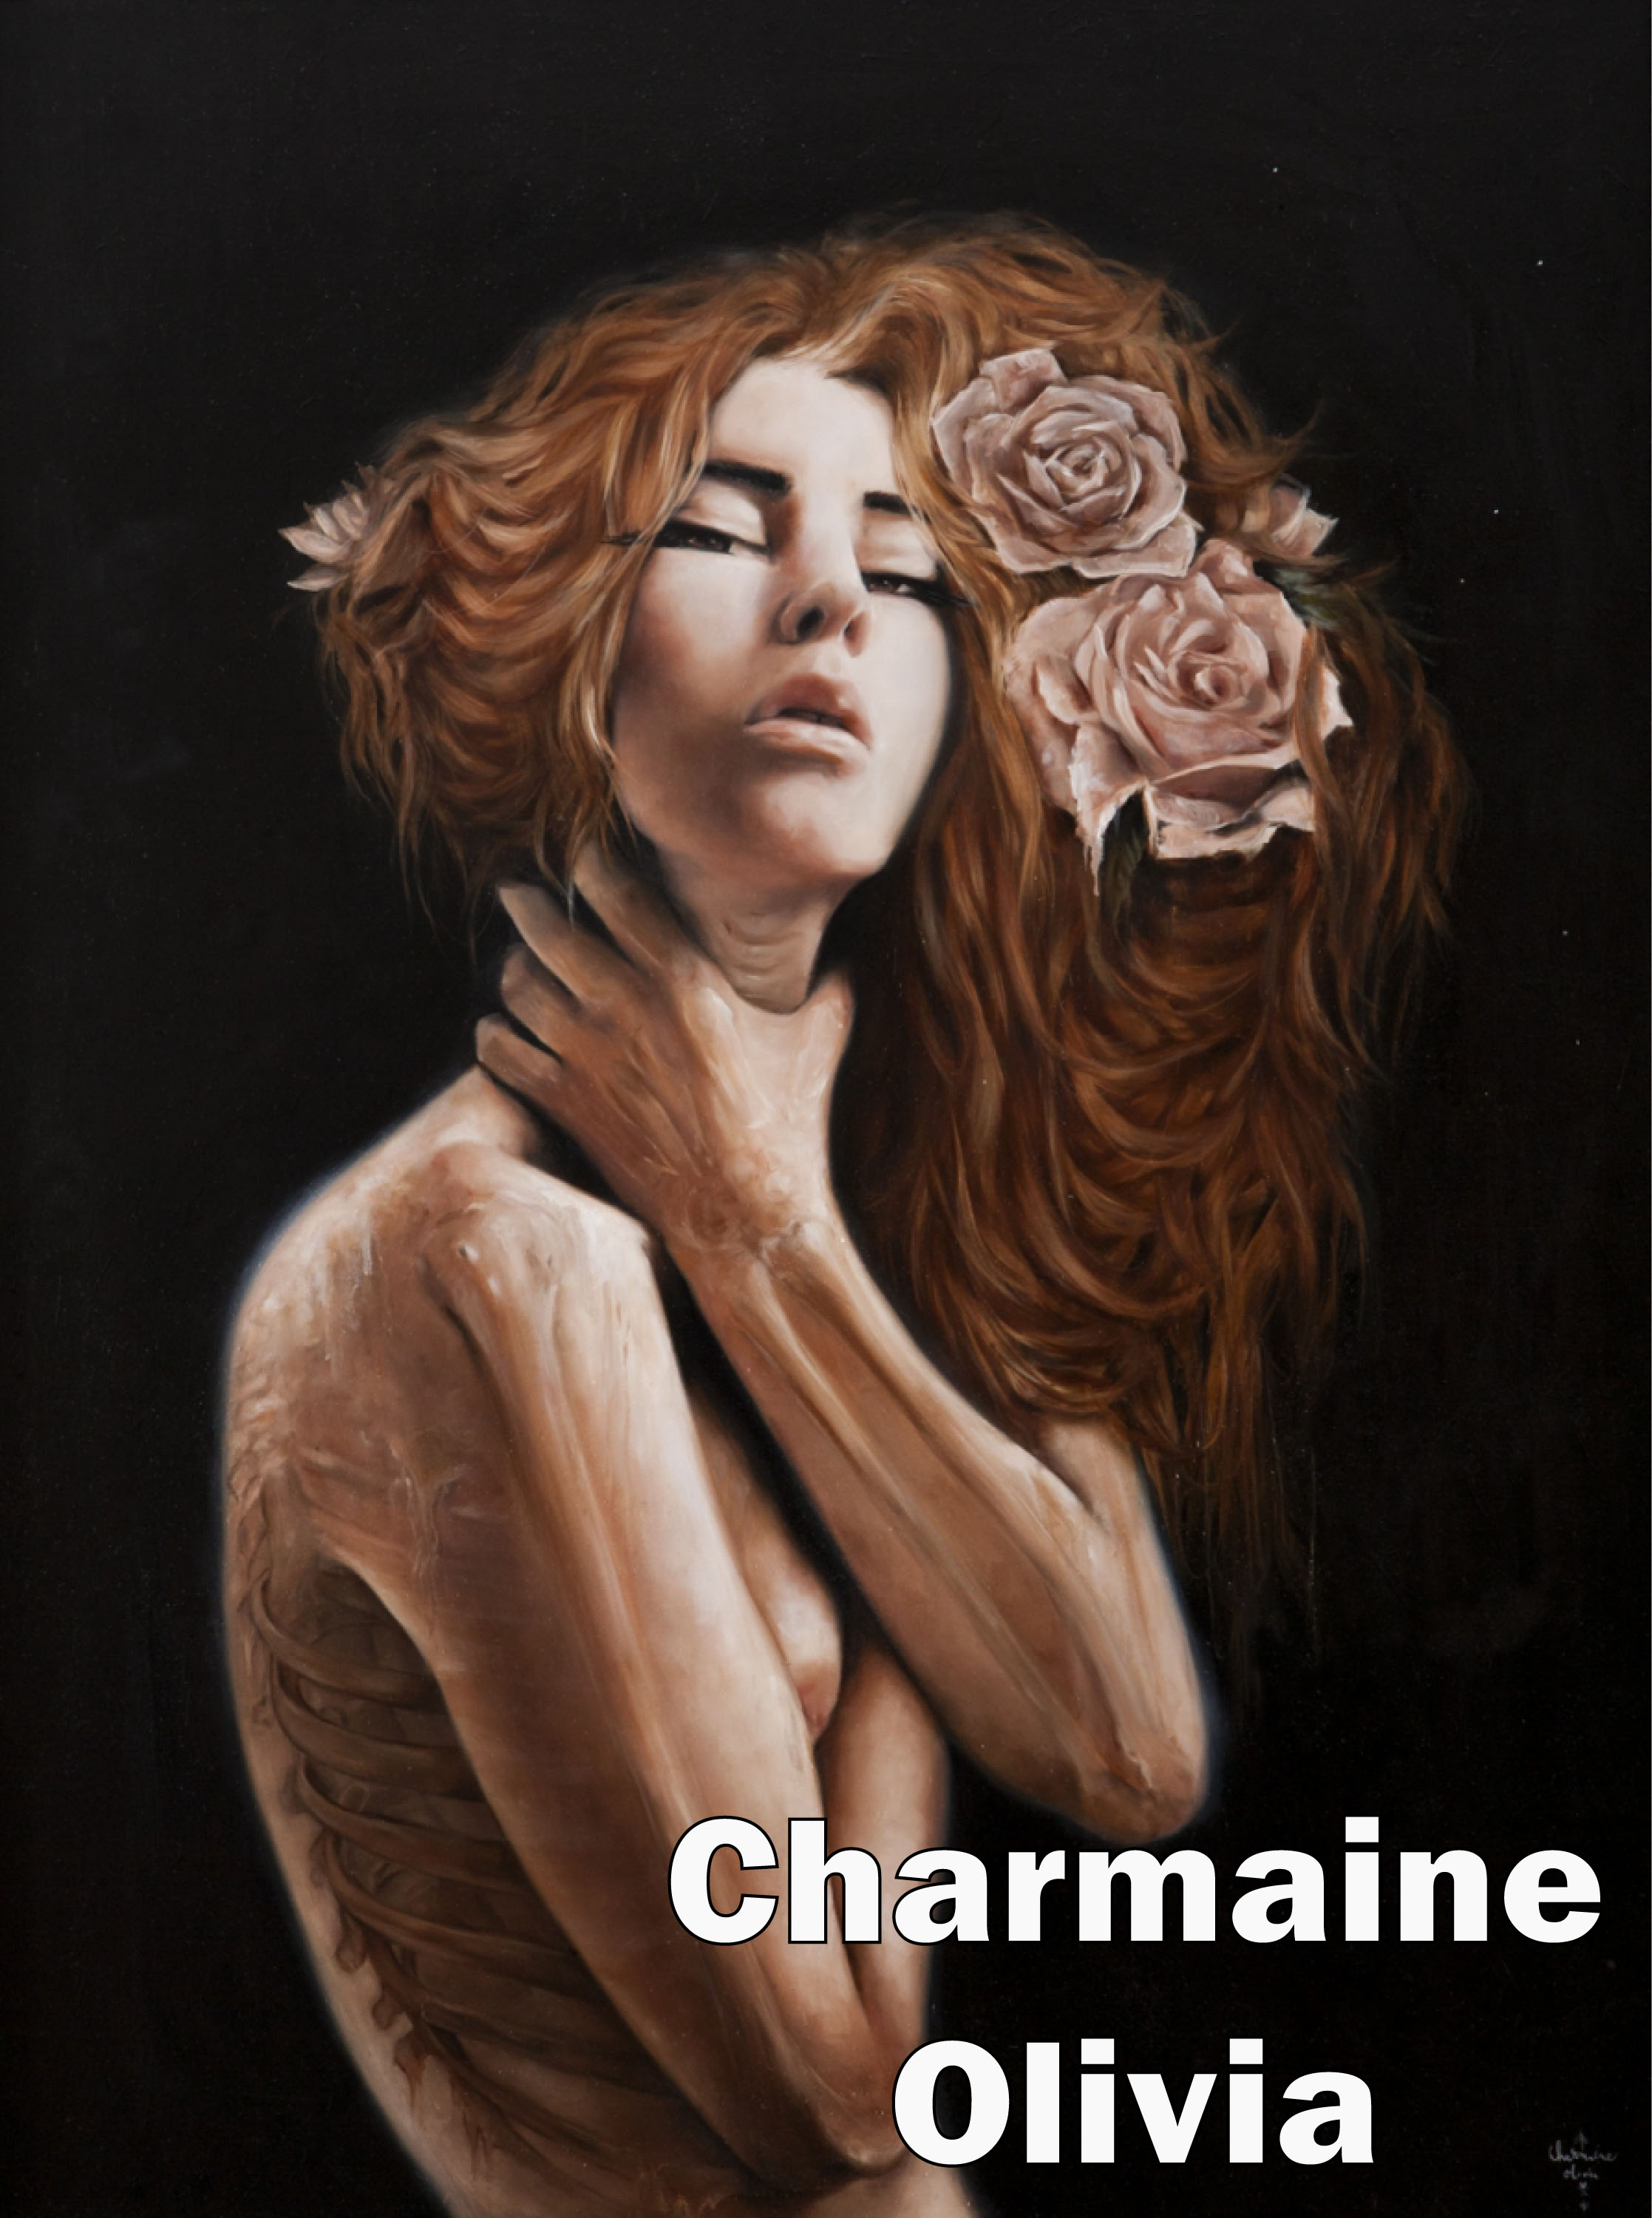 Charmaine Olivia